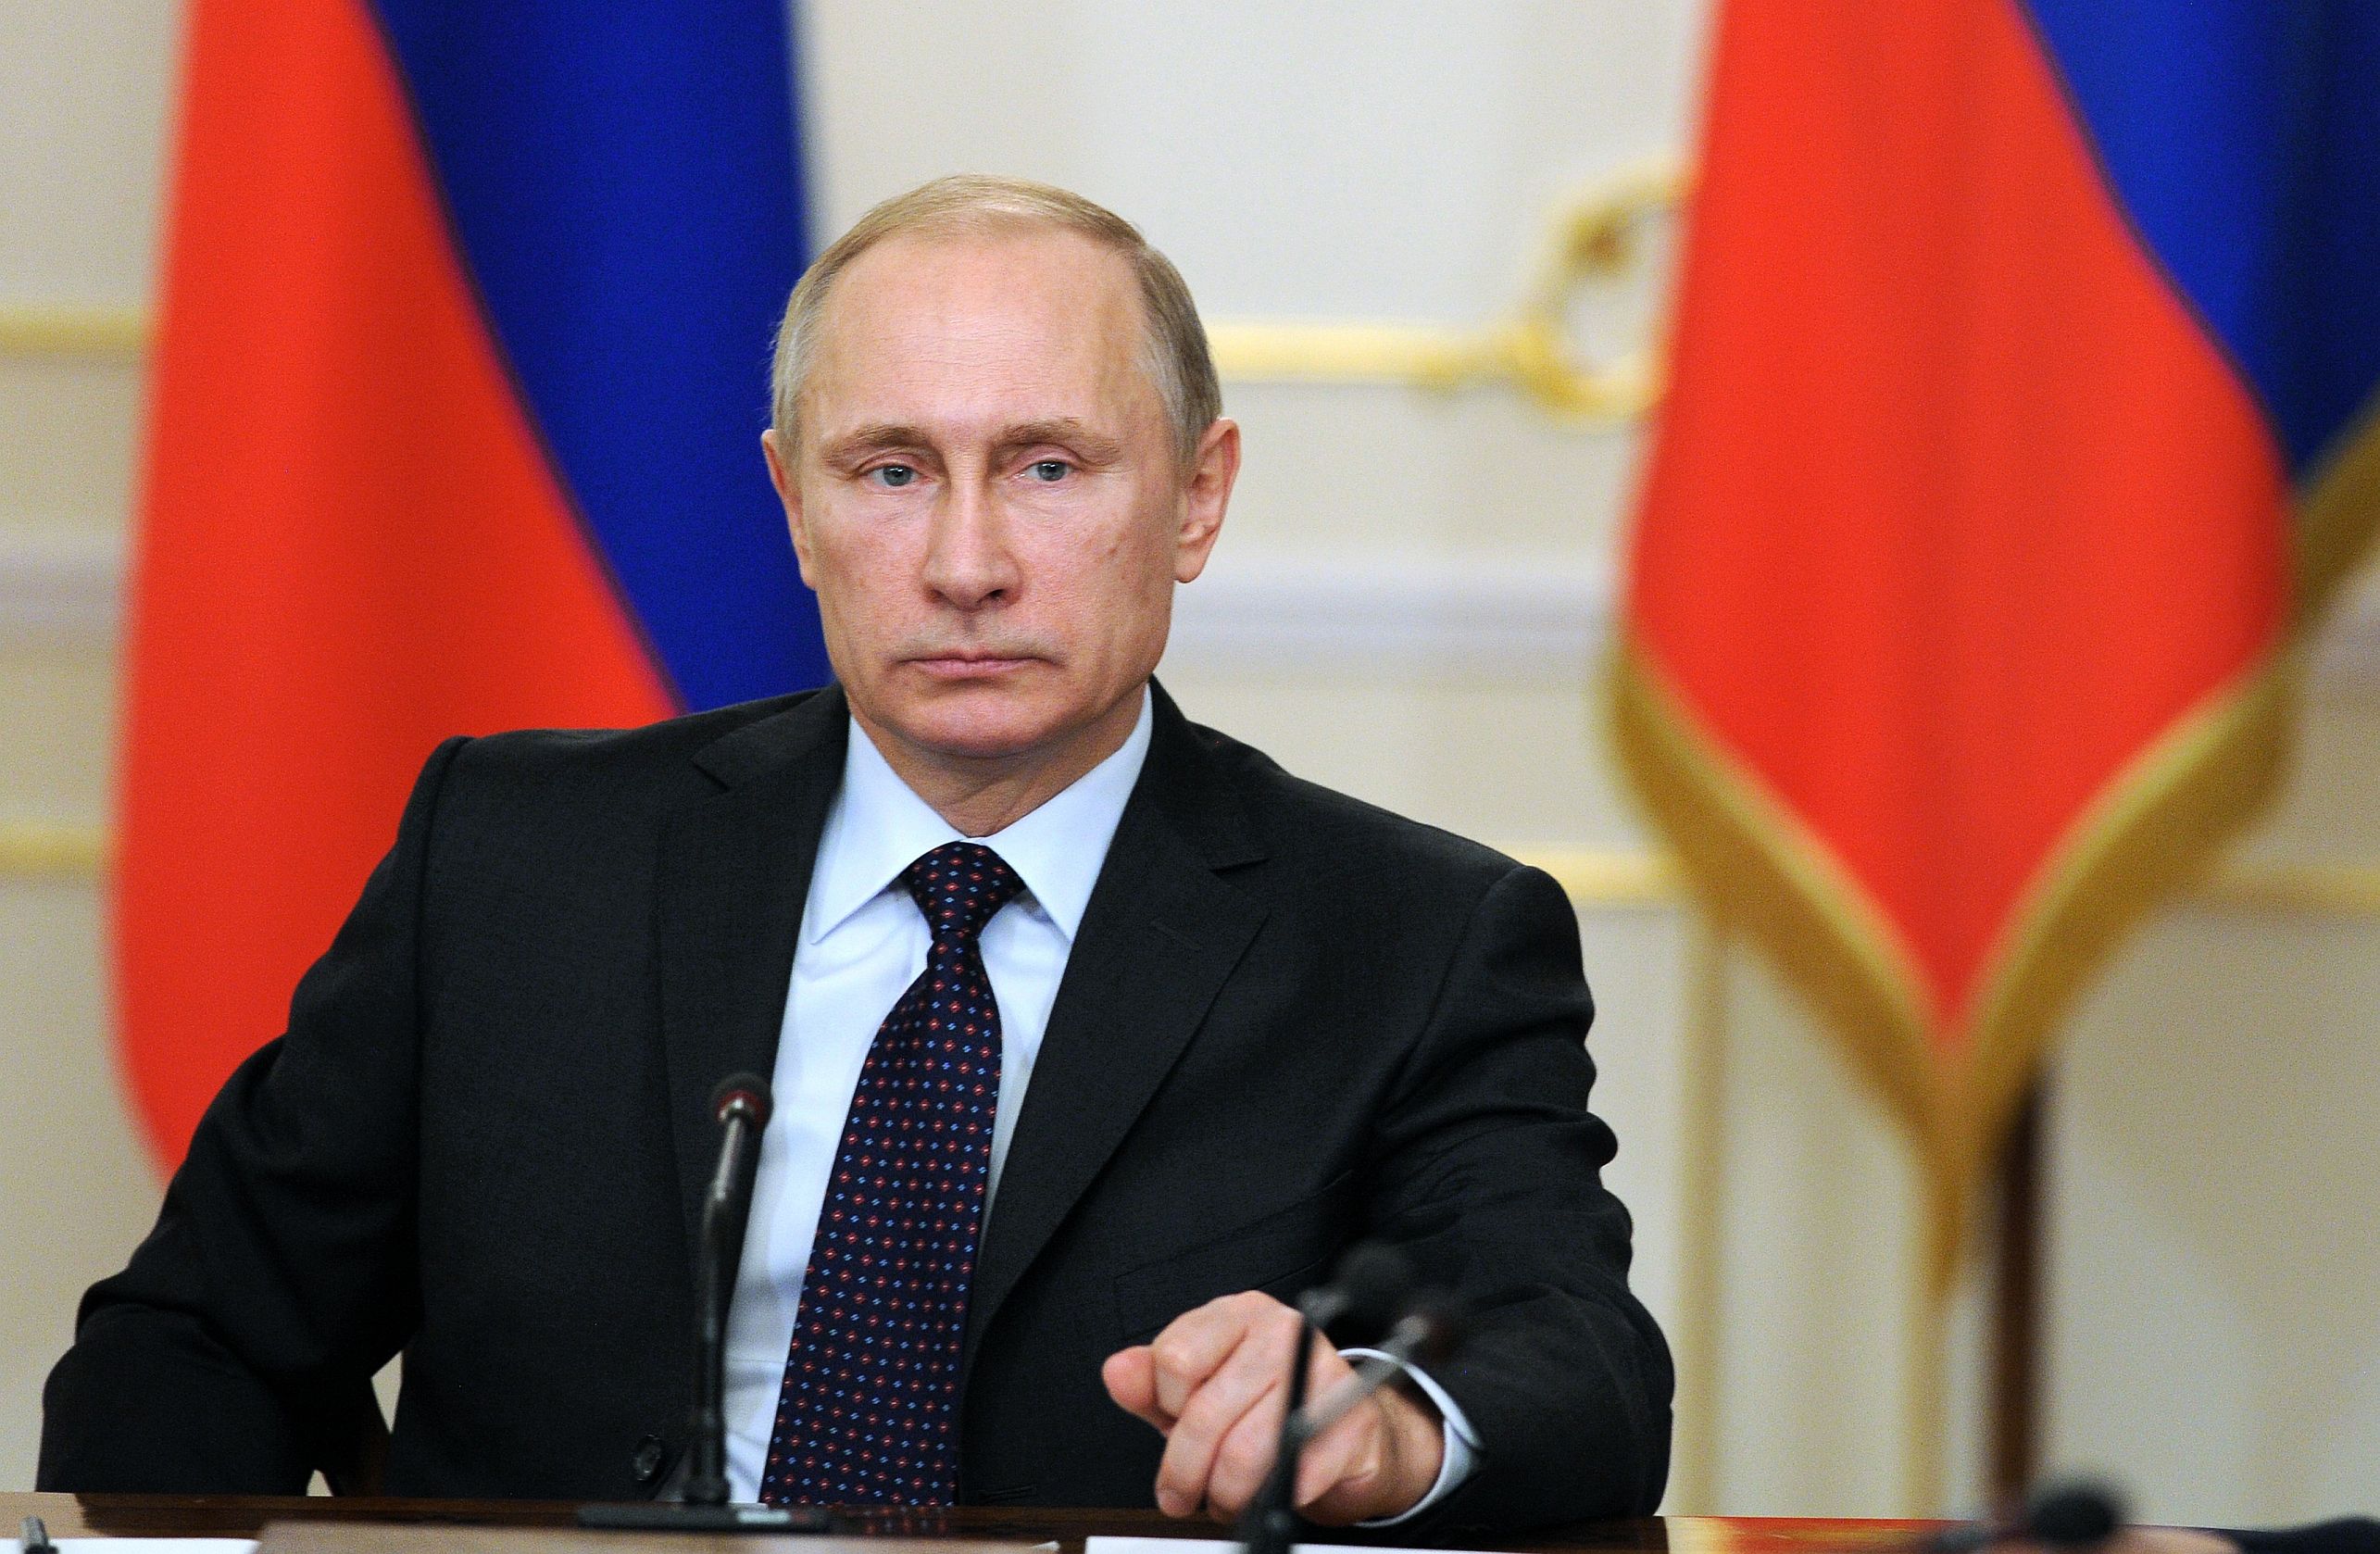  Putyin: Oroszország nem készül senkivel háborúzni